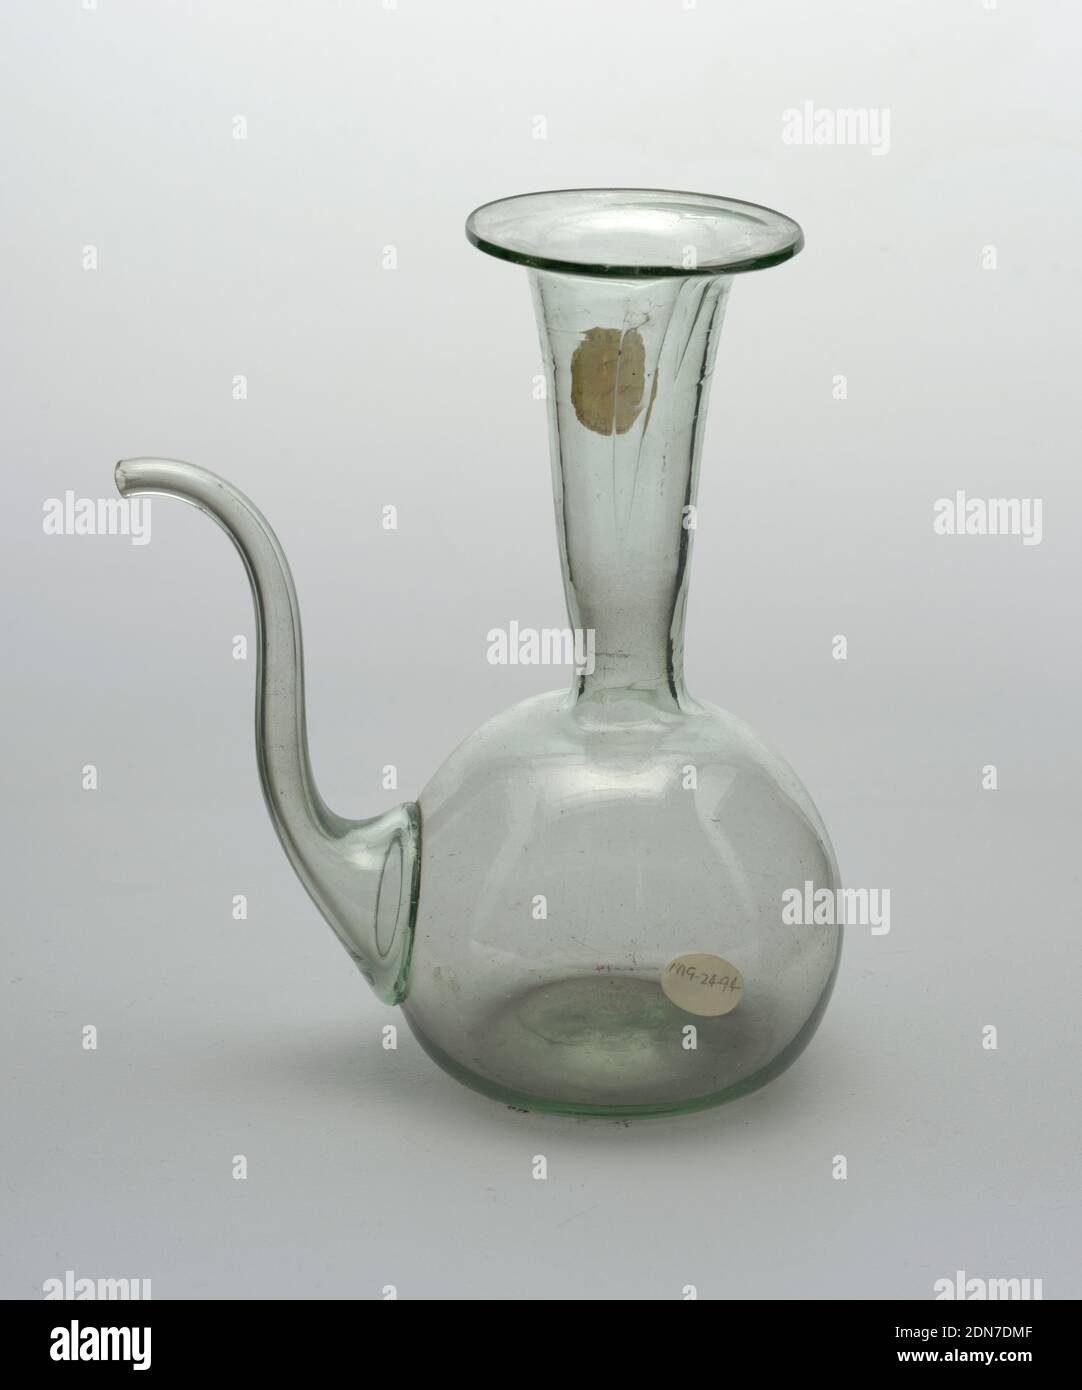 Caraffa, vetro trasparente e verdeggiante, vaso in vetro trasparente con una tinta verde chiaro, Iran, XVII-XVIII secolo, vetreria, arti decorative, Pitcher Foto Stock